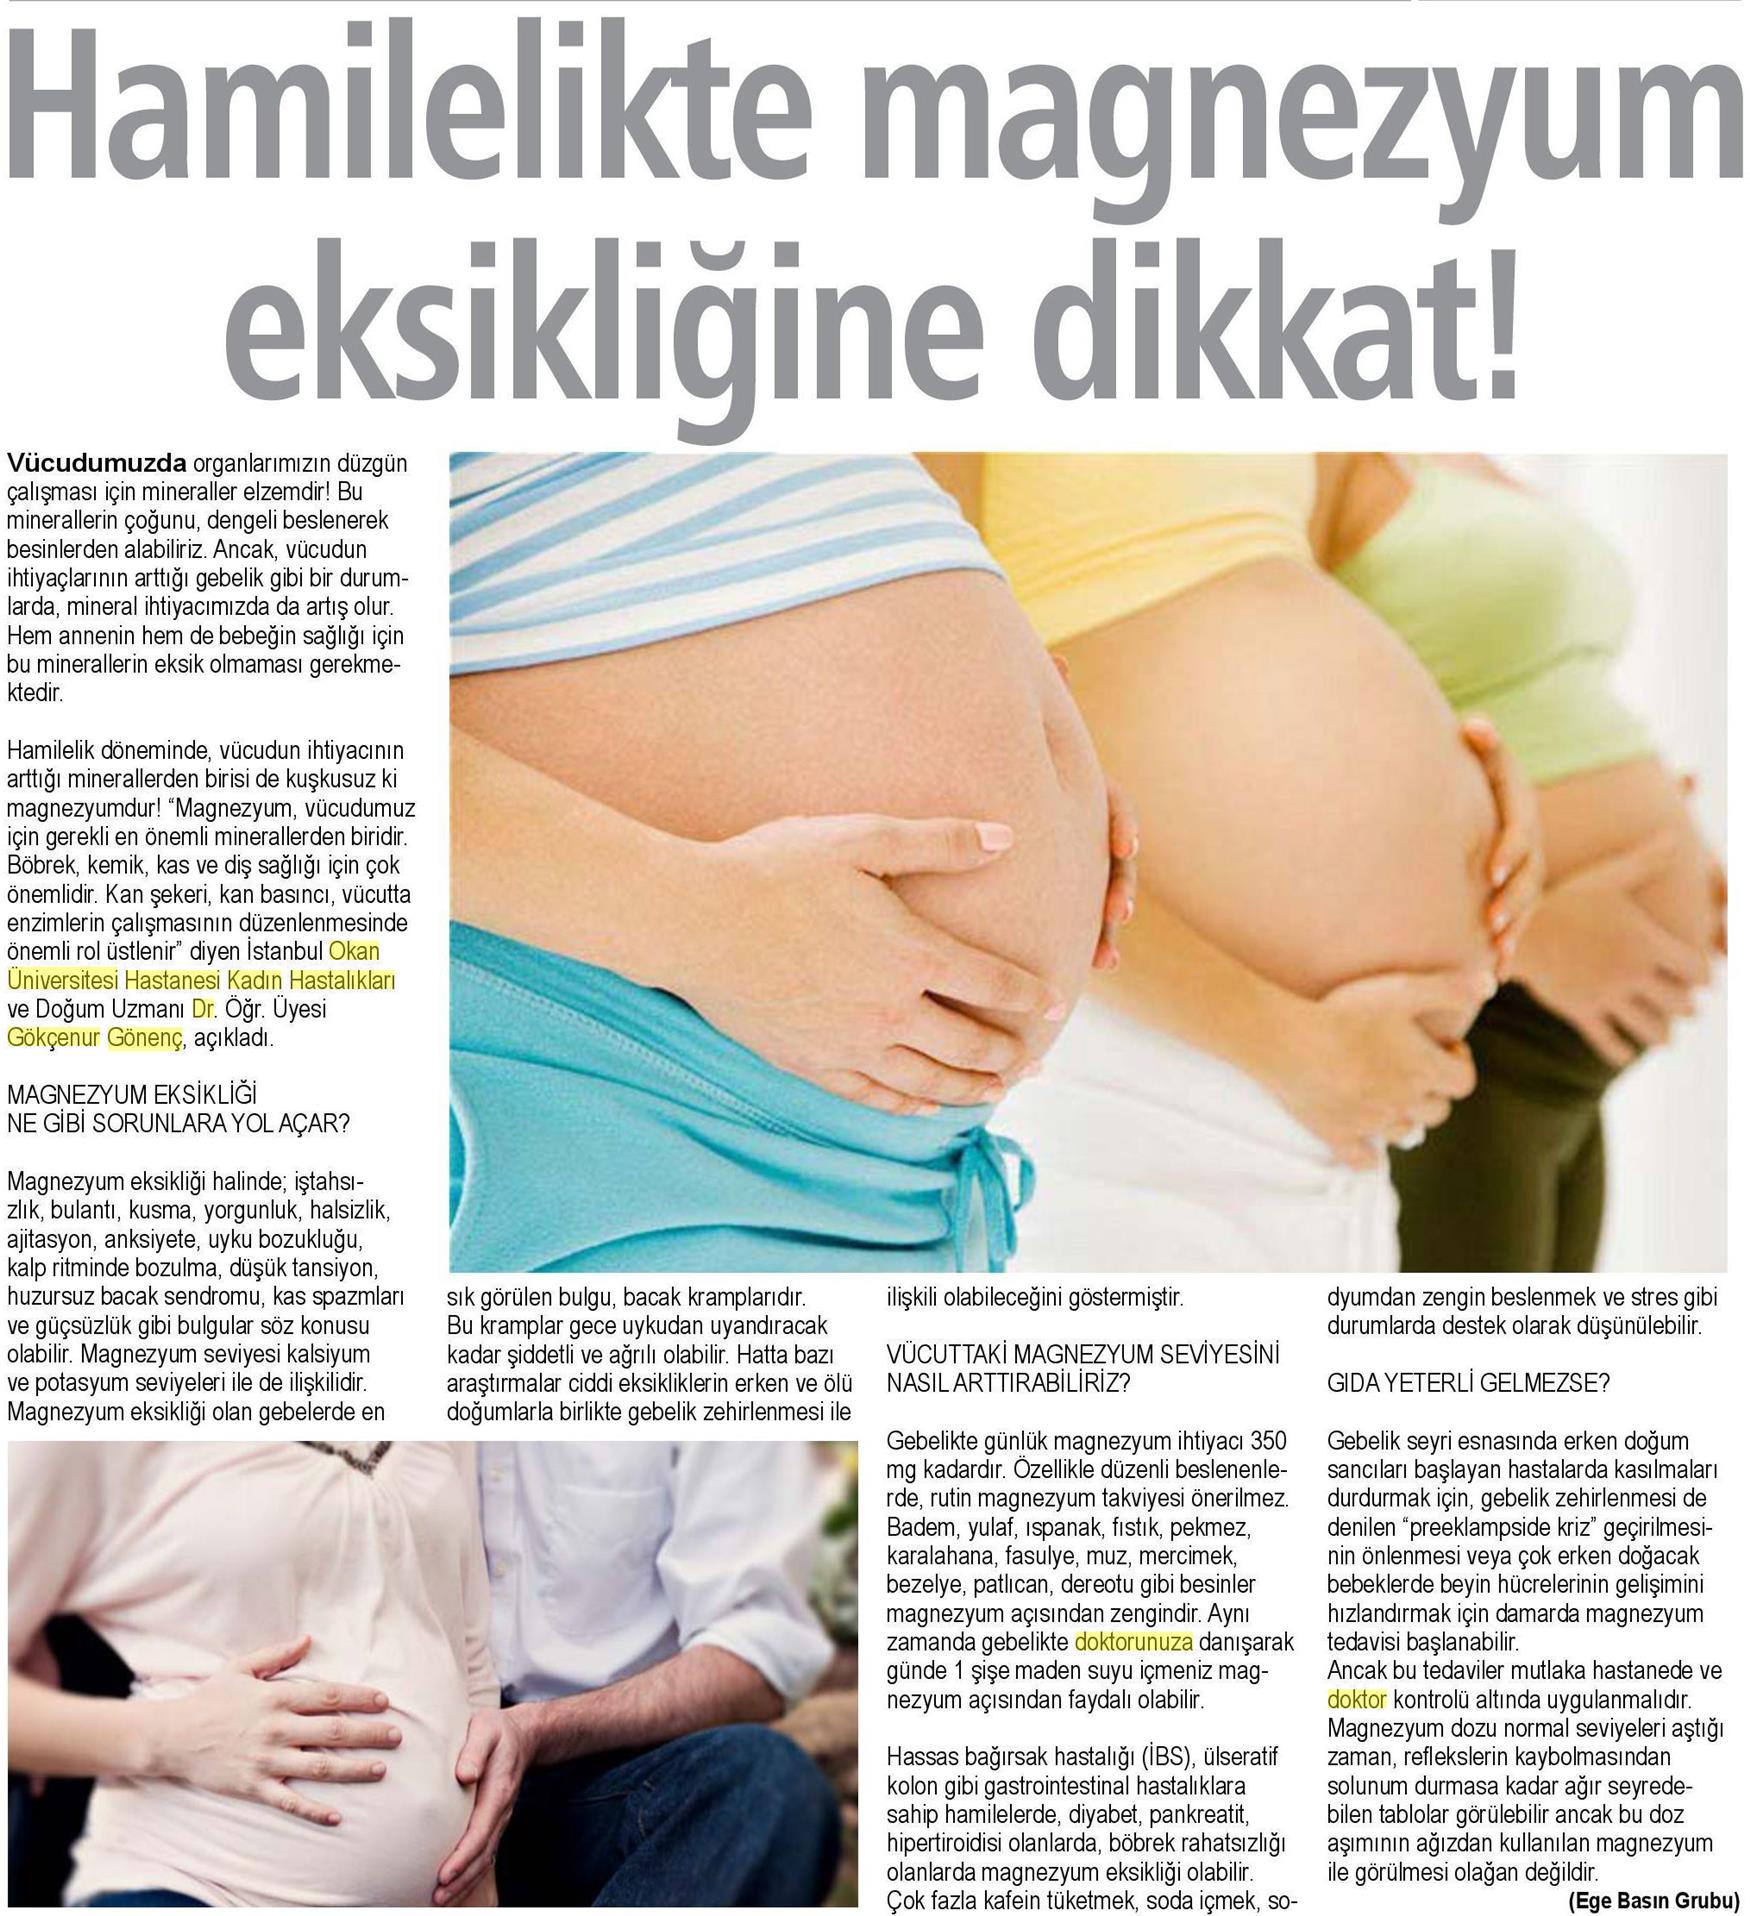 23.04.2019 Sağlık Gazetesi HAMİLELİKTE MAGNEZYUM EKSİKLİĞİNE DİKKAT!